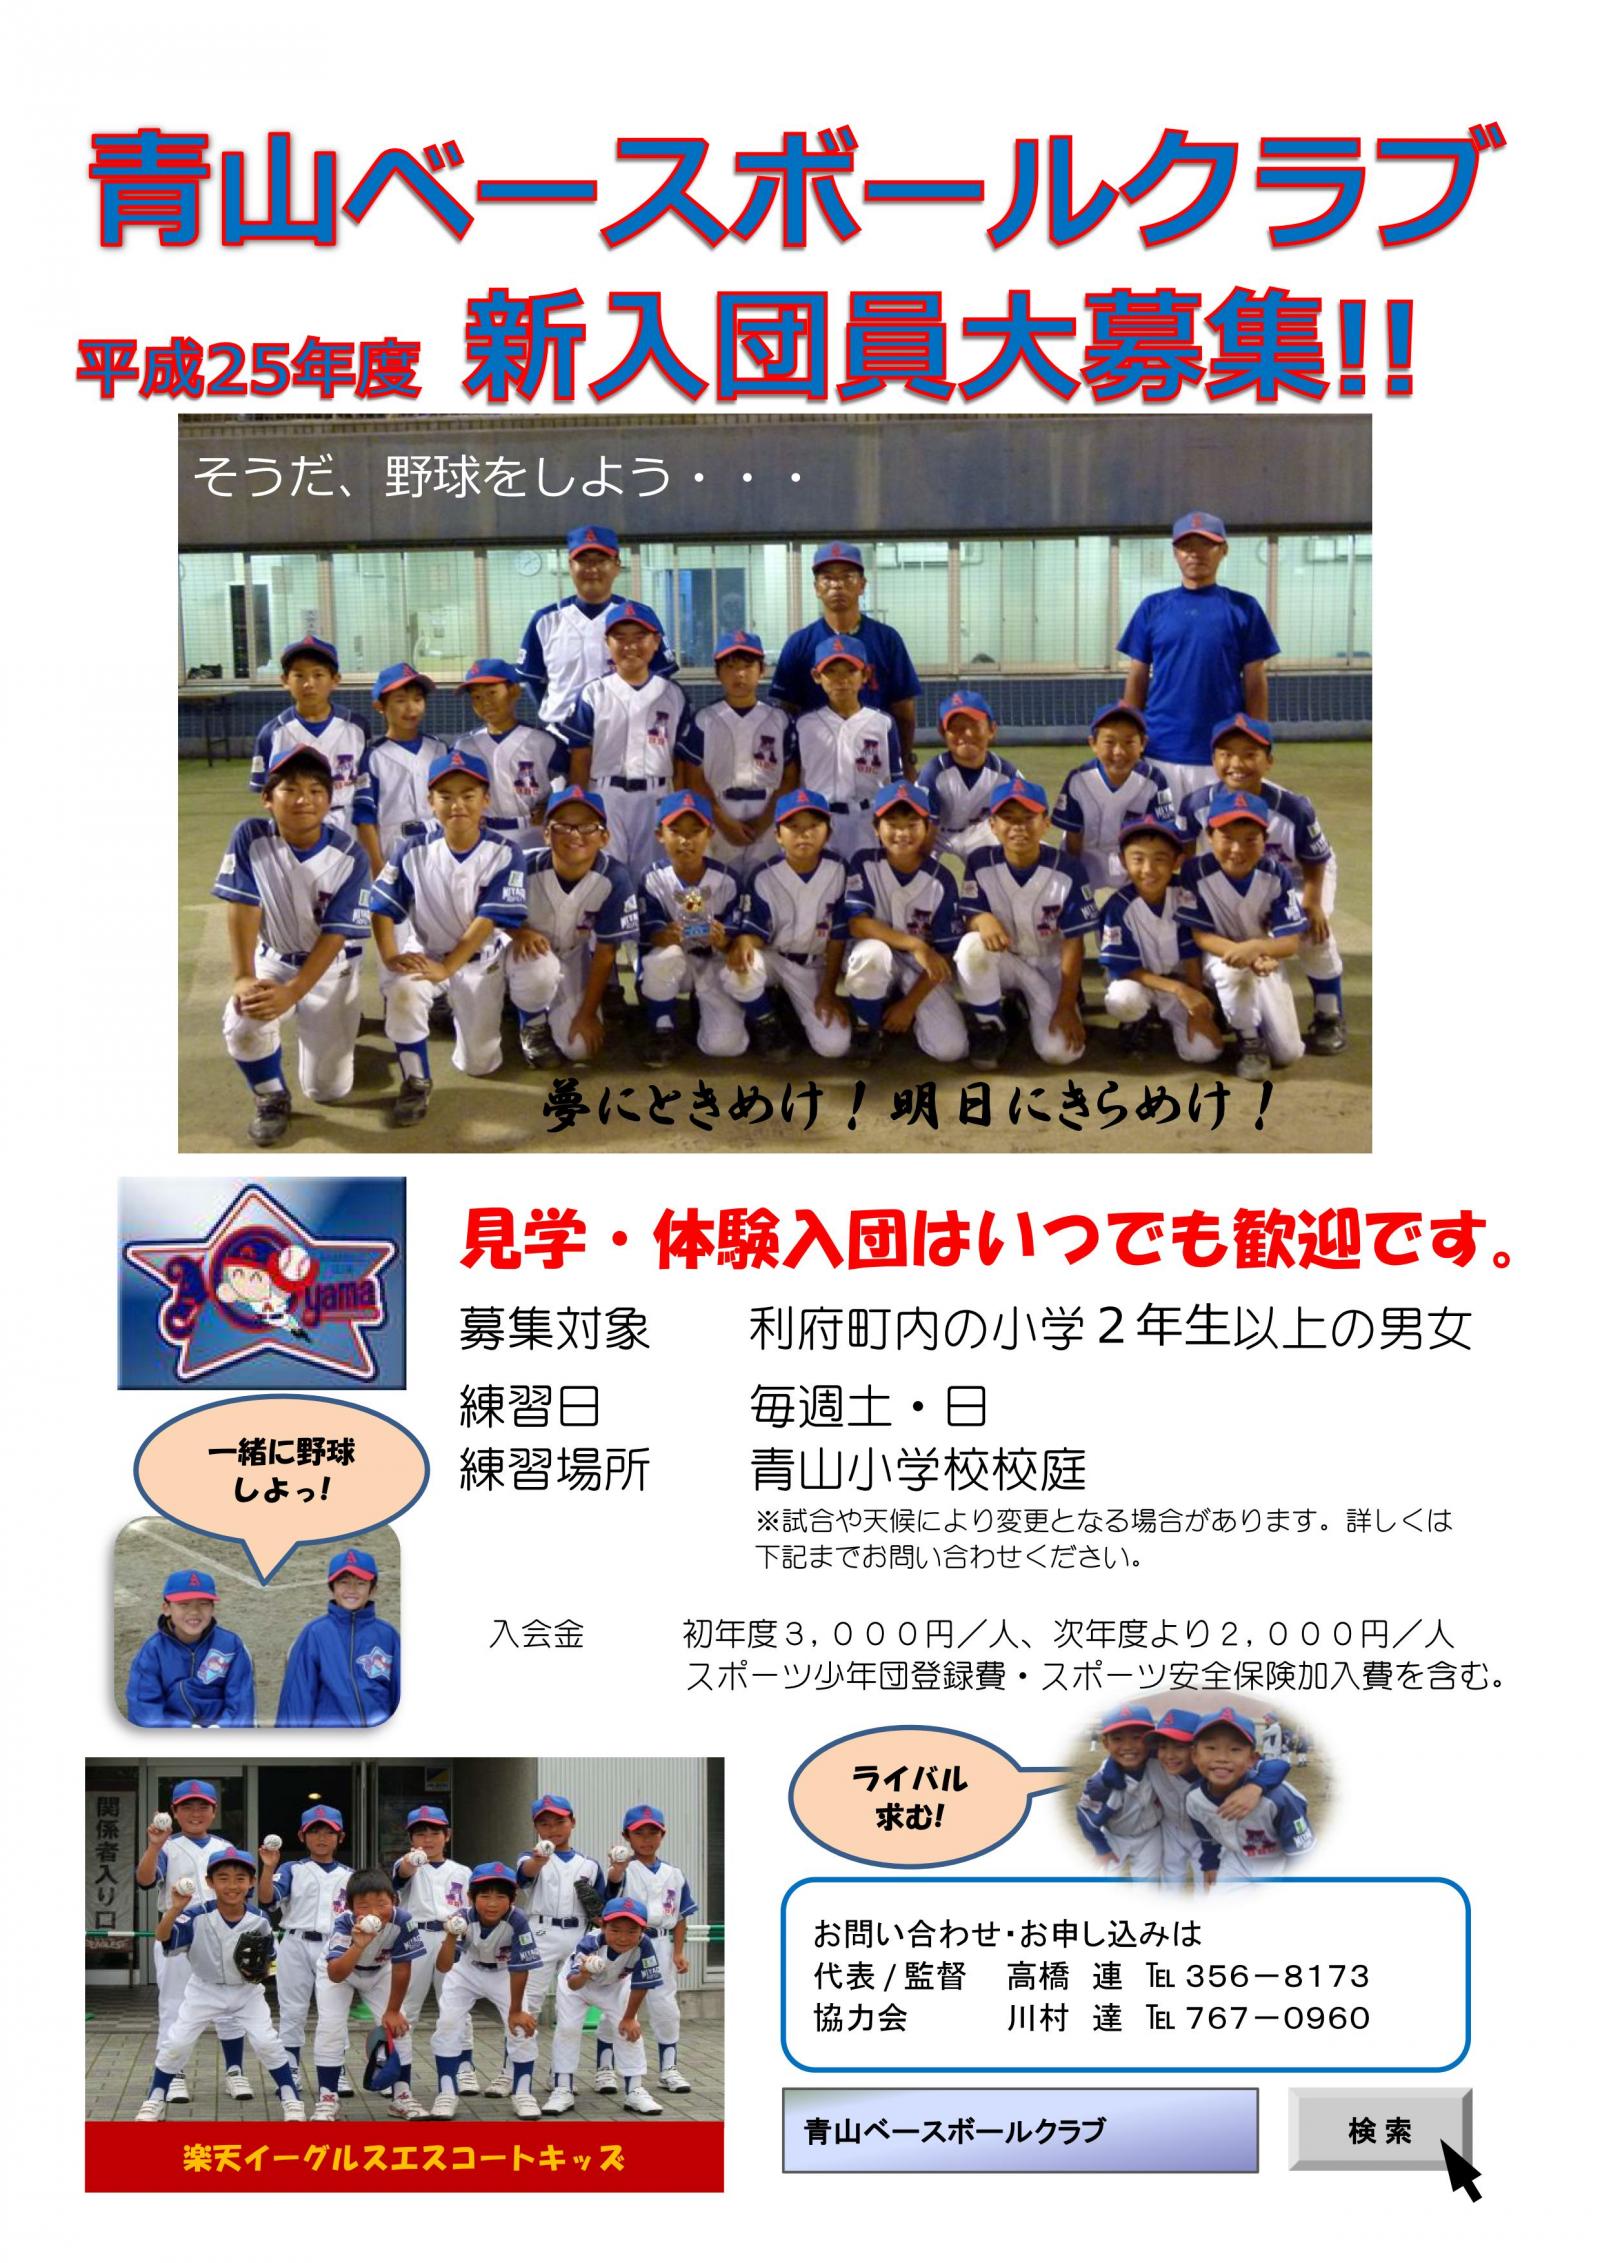 ☆☆☆☆☆　青山ベースボールクラブ２０１３　☆☆☆☆☆